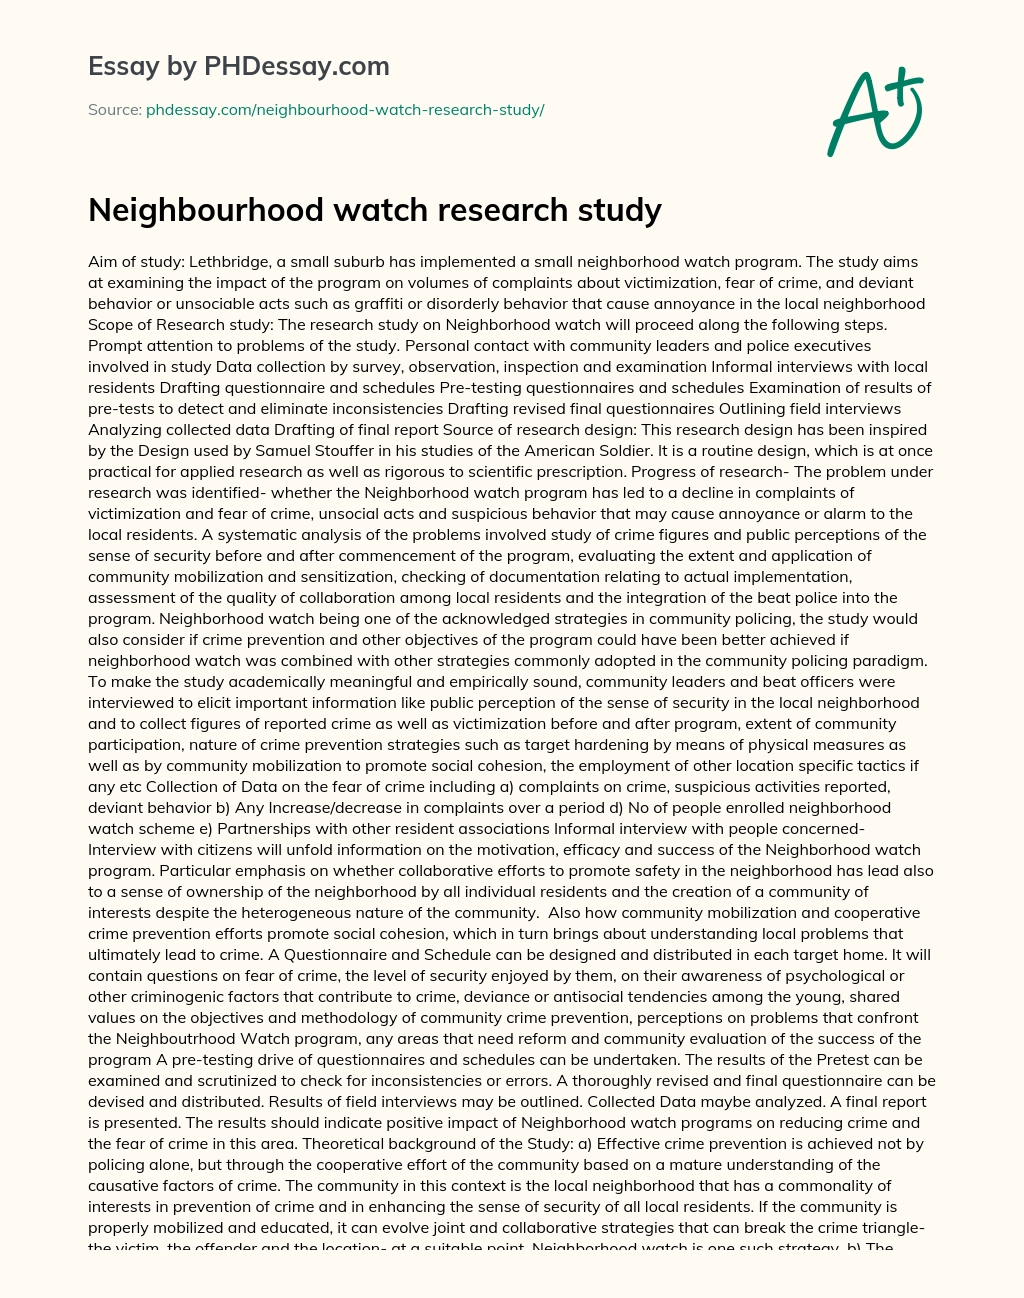 Neighbourhood watch research study essay